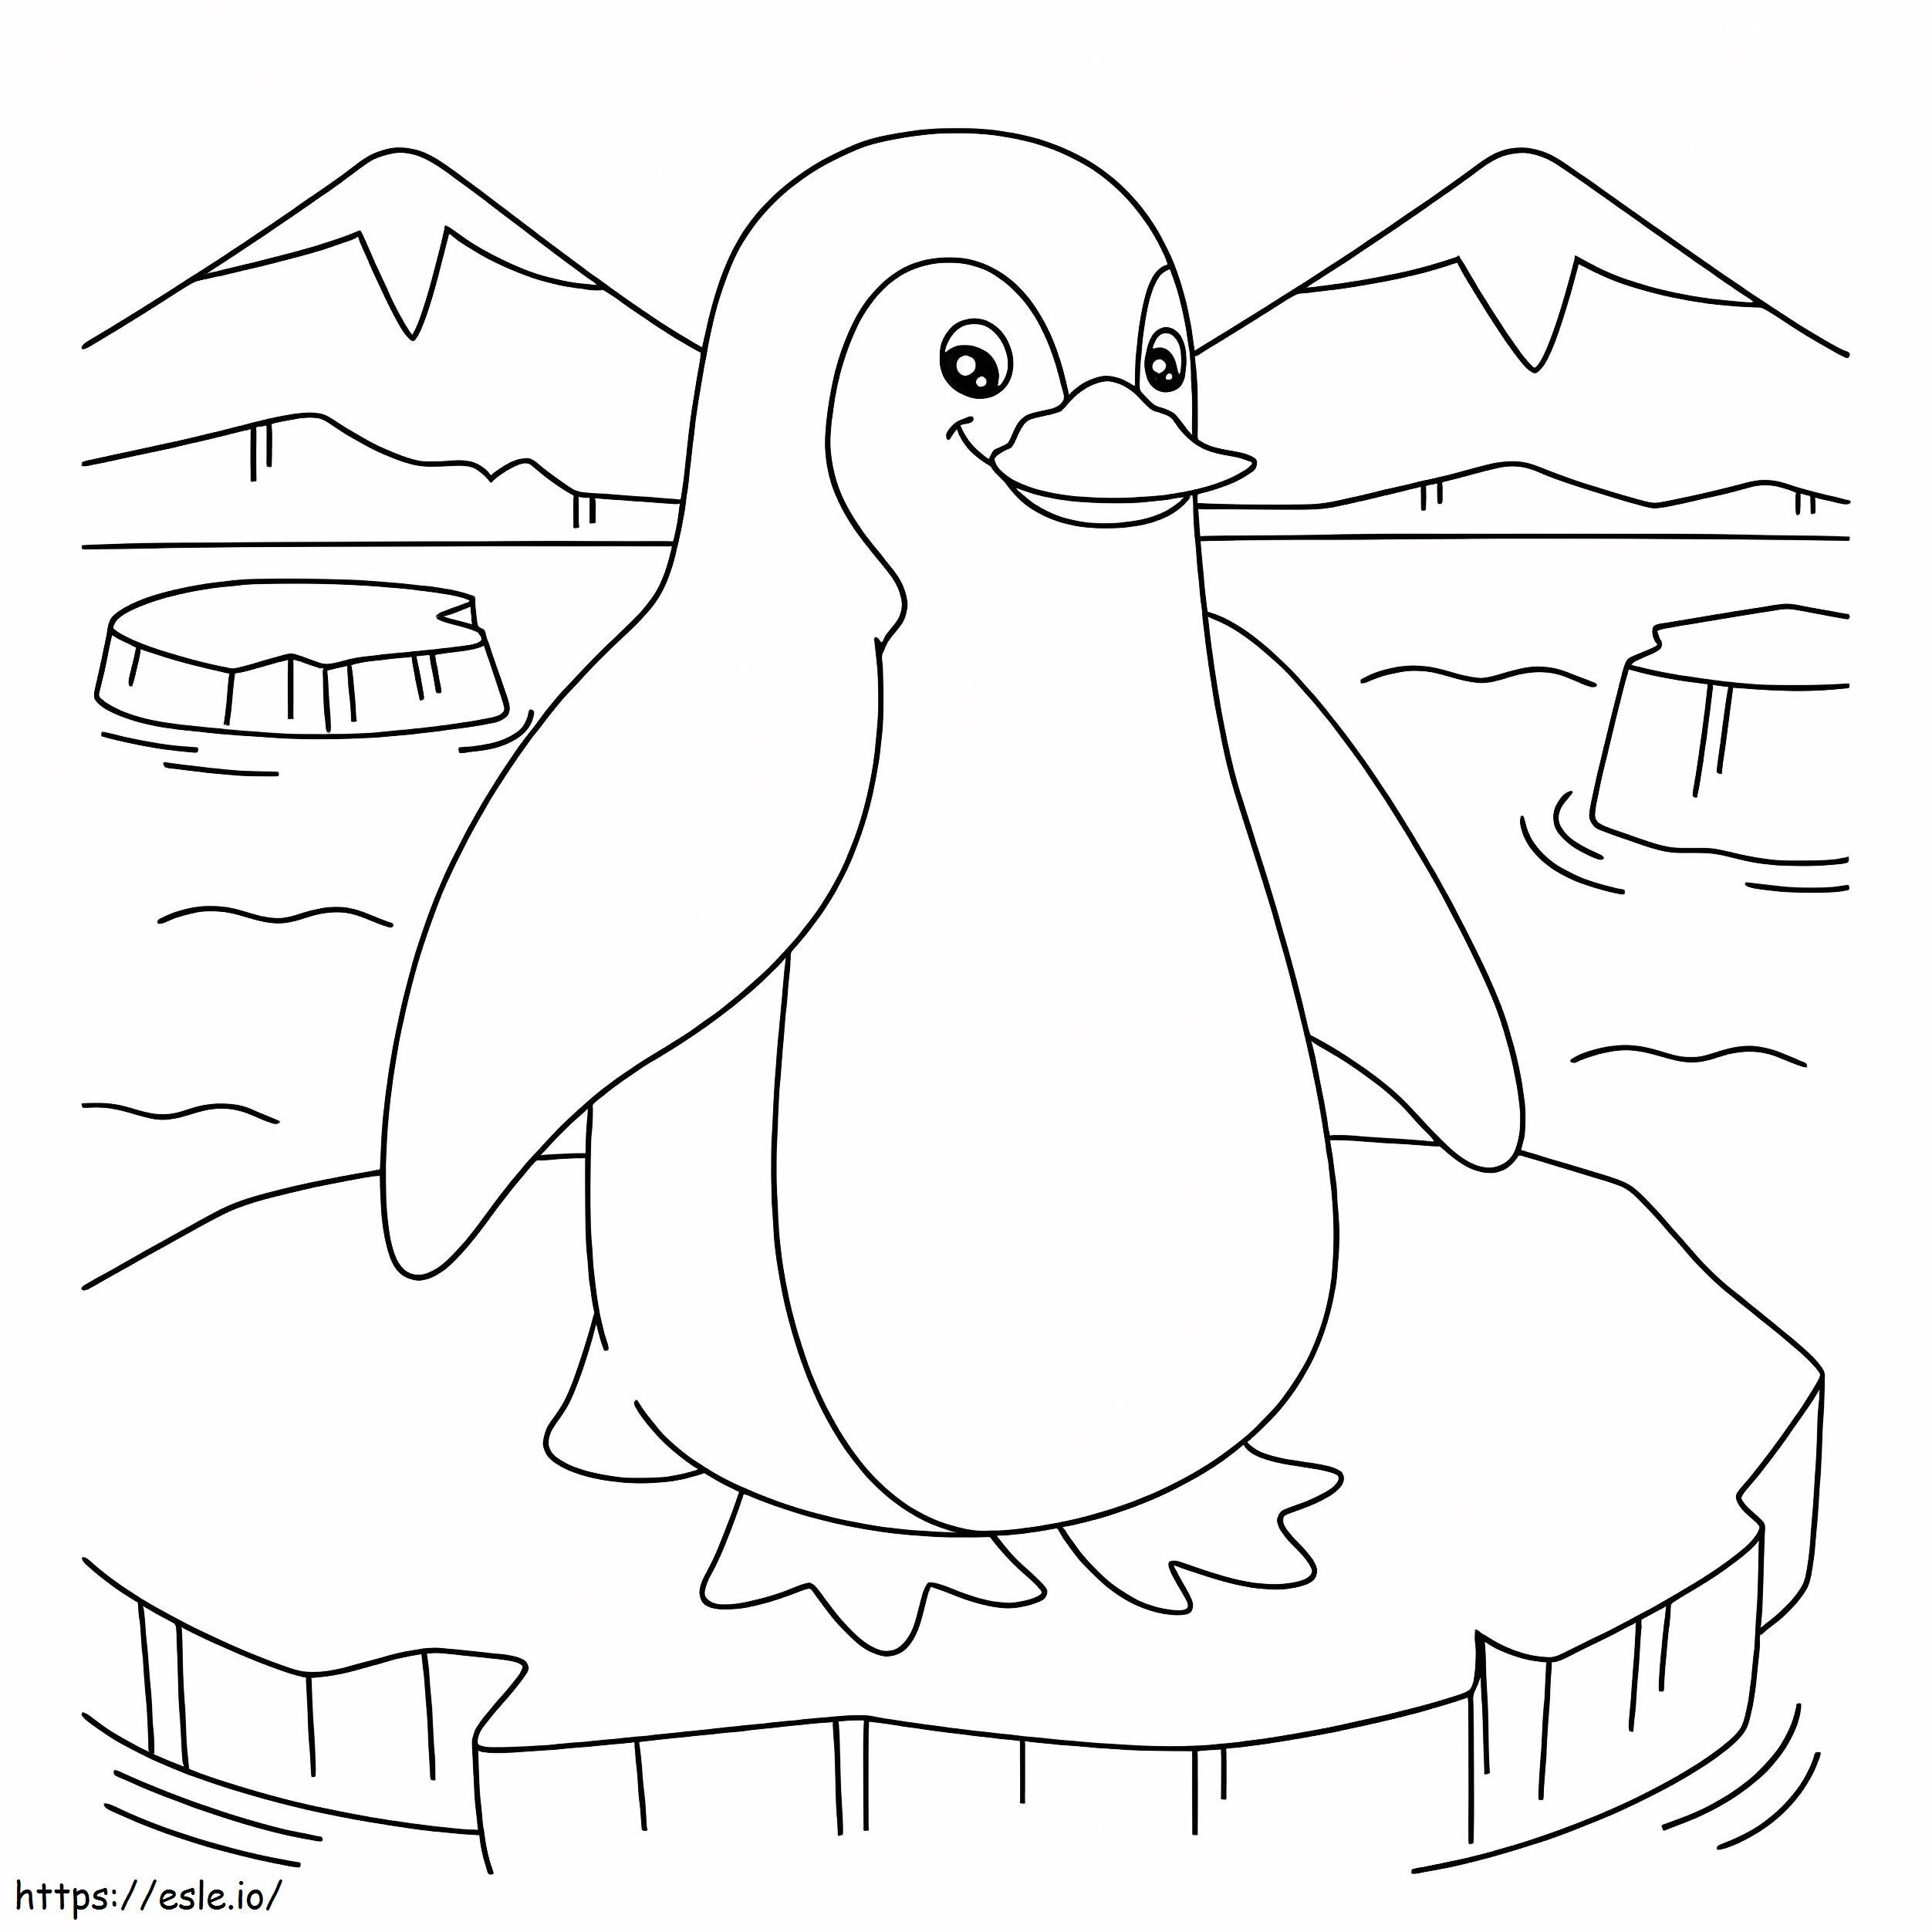 Pinguine auf Eis ausmalbilder